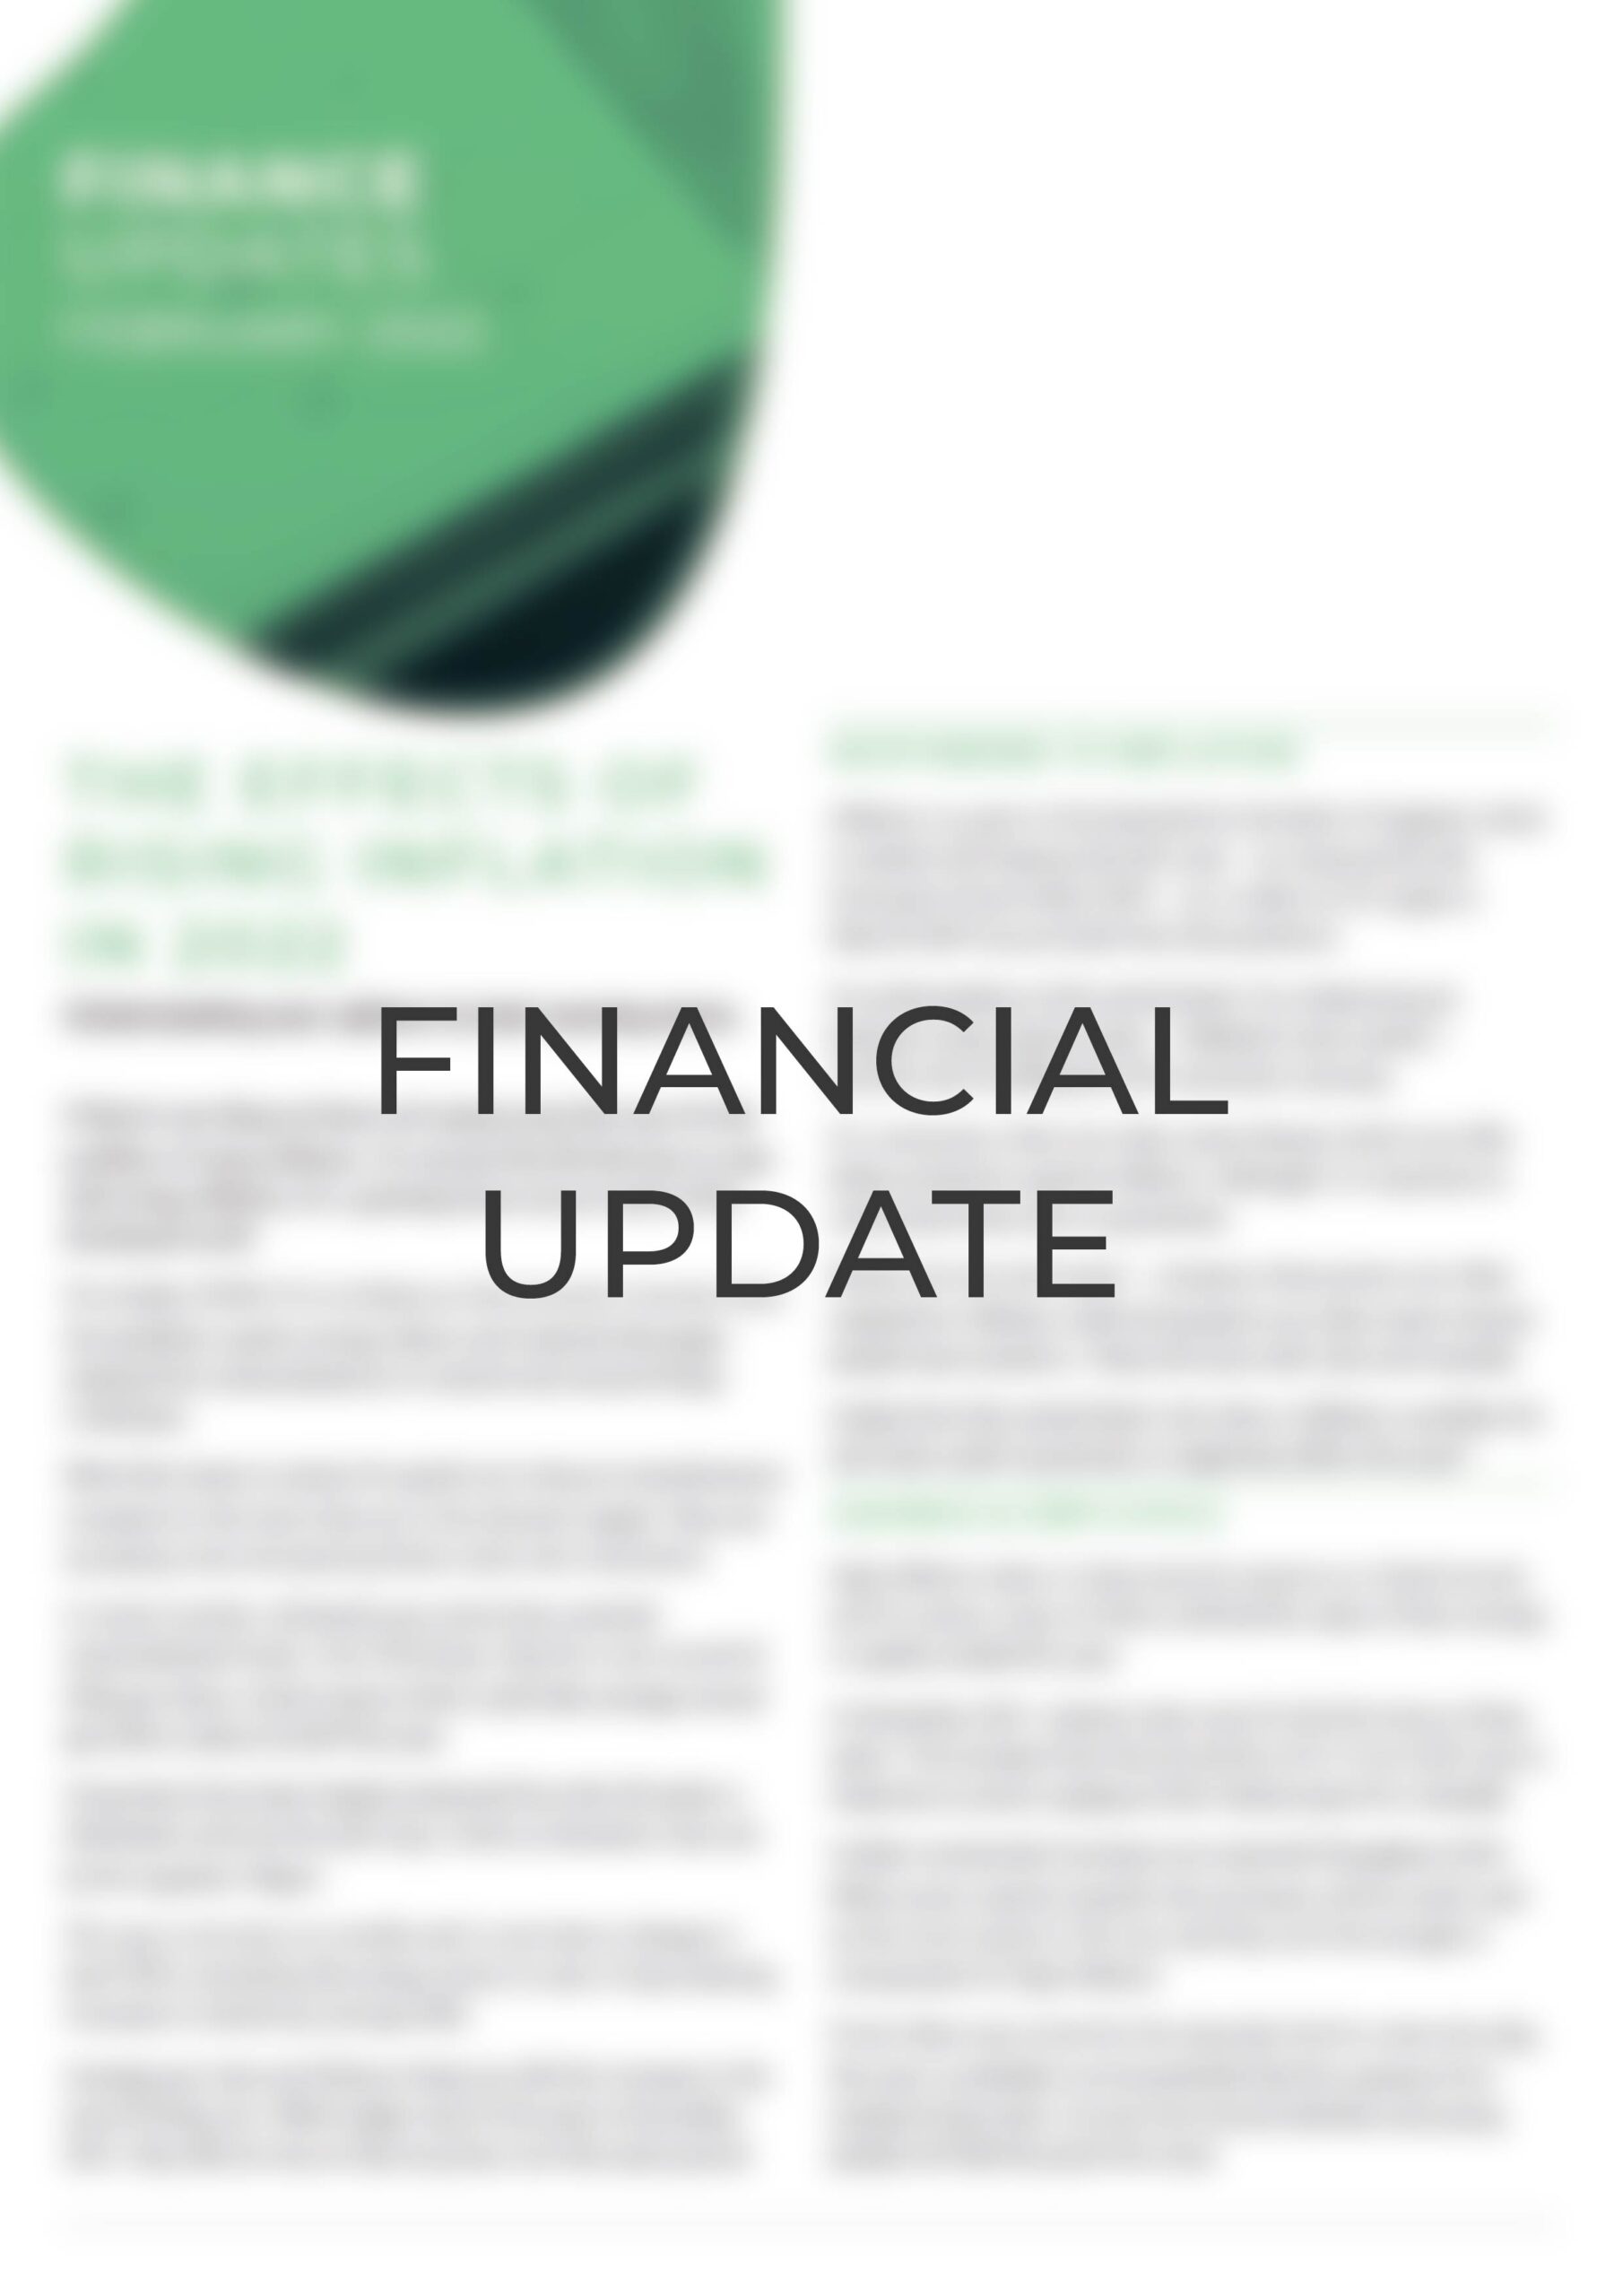 Finance update - Estate Planning